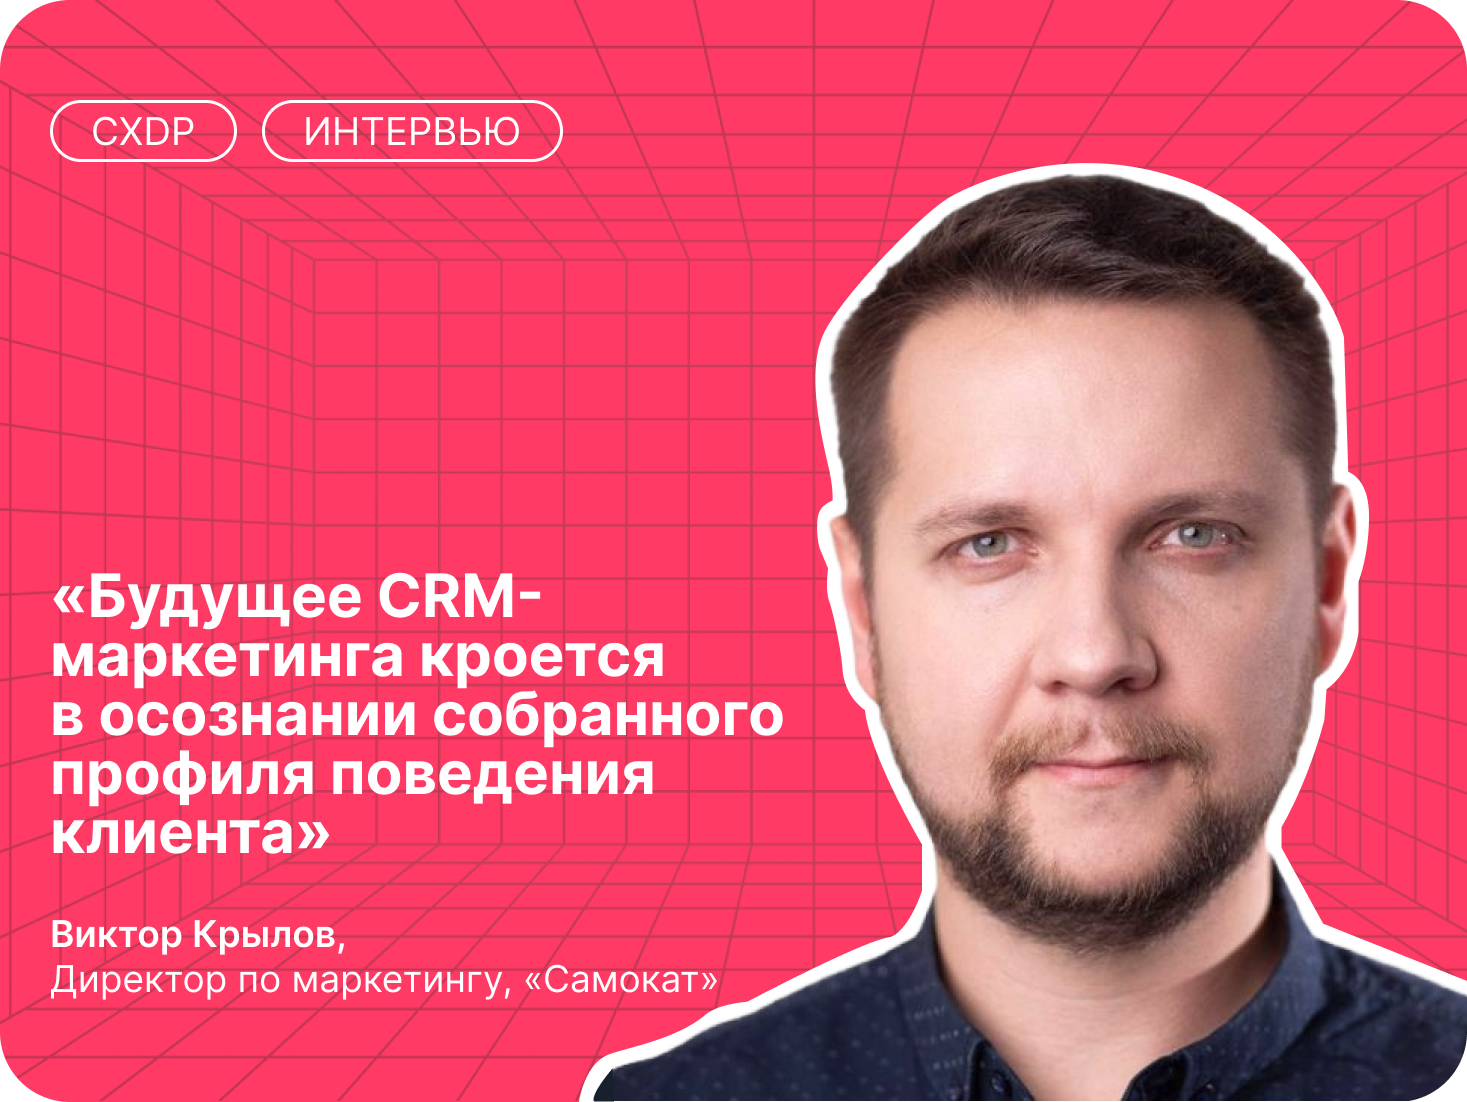 Виктор Крылов о сложностях в обучении профессии CRM-маркетолога, амбициозных планах Самоката и будущем CRM-маркетинга